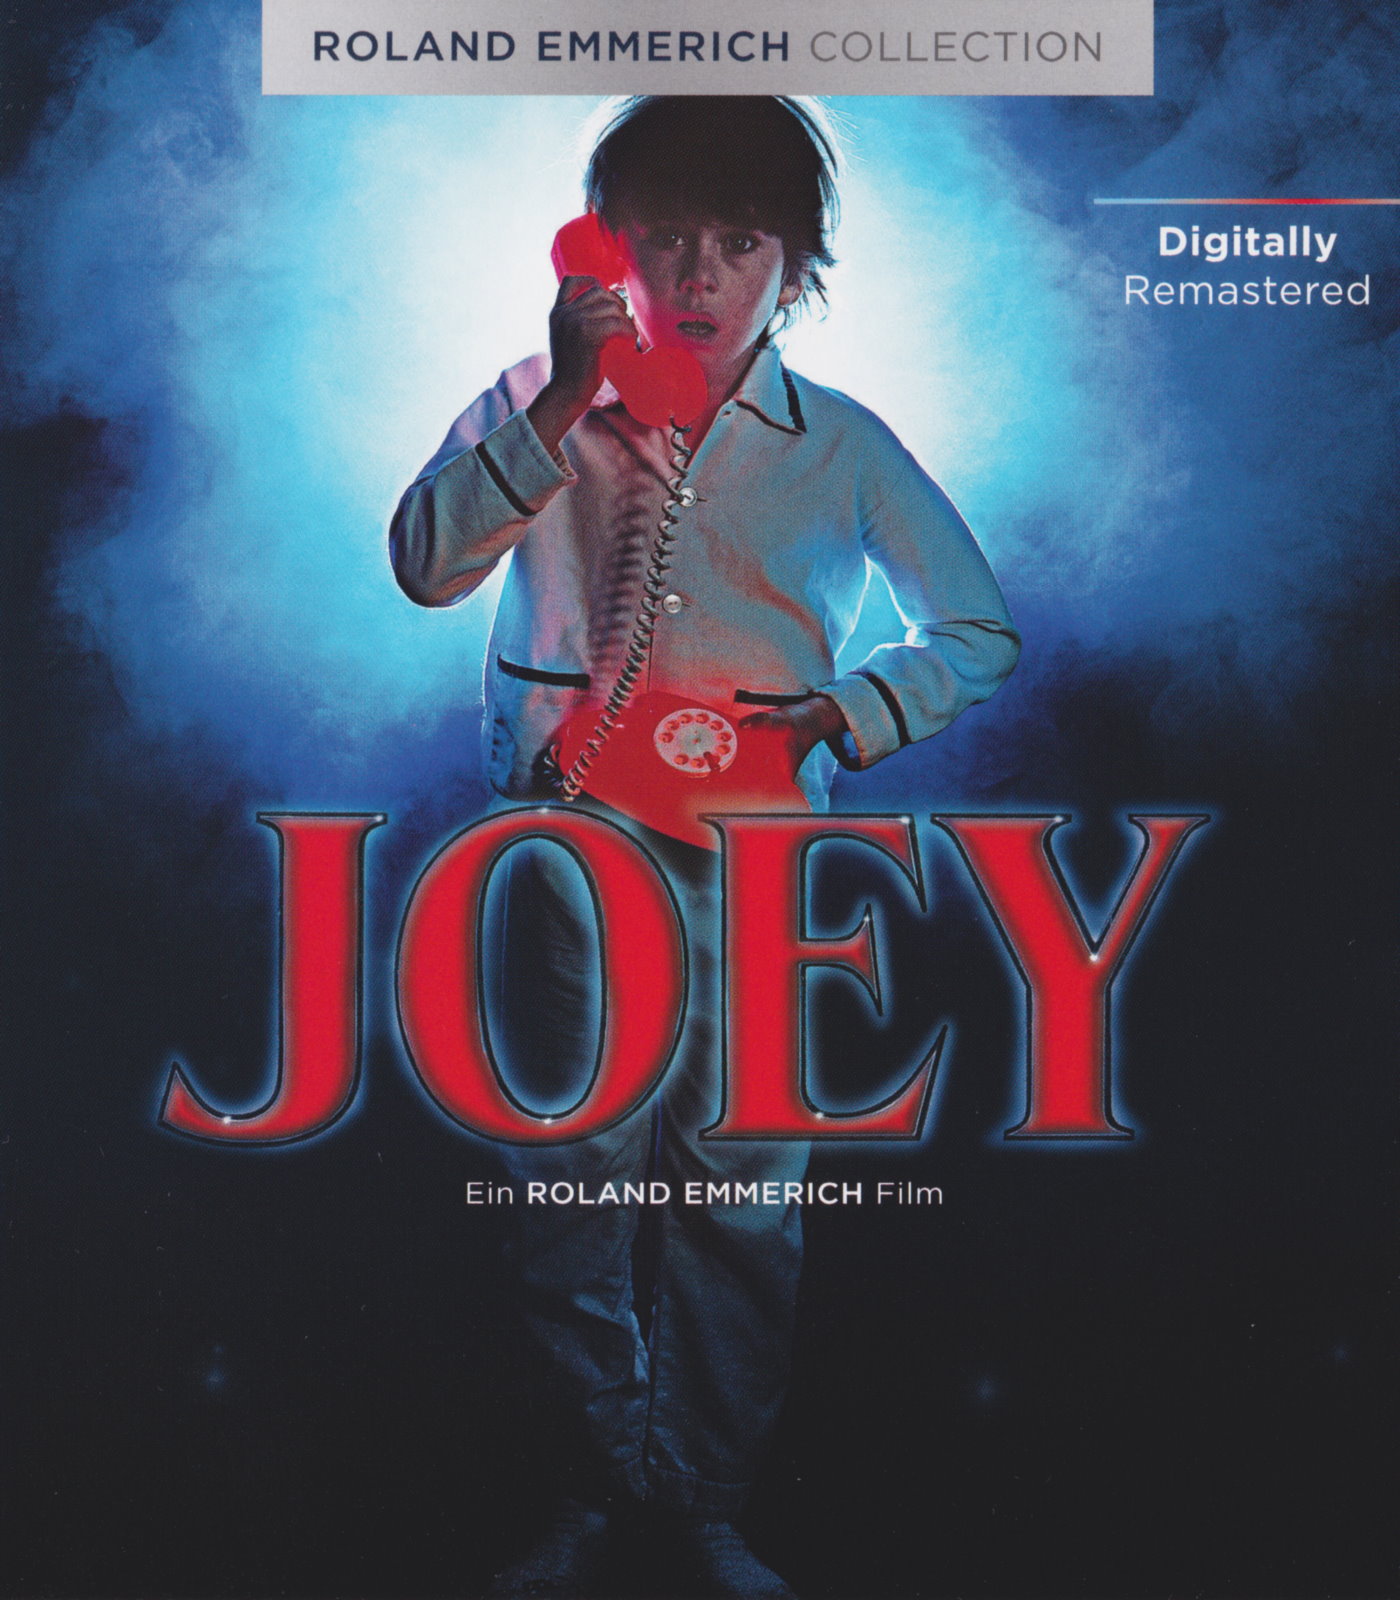 Cover - Joey.jpg